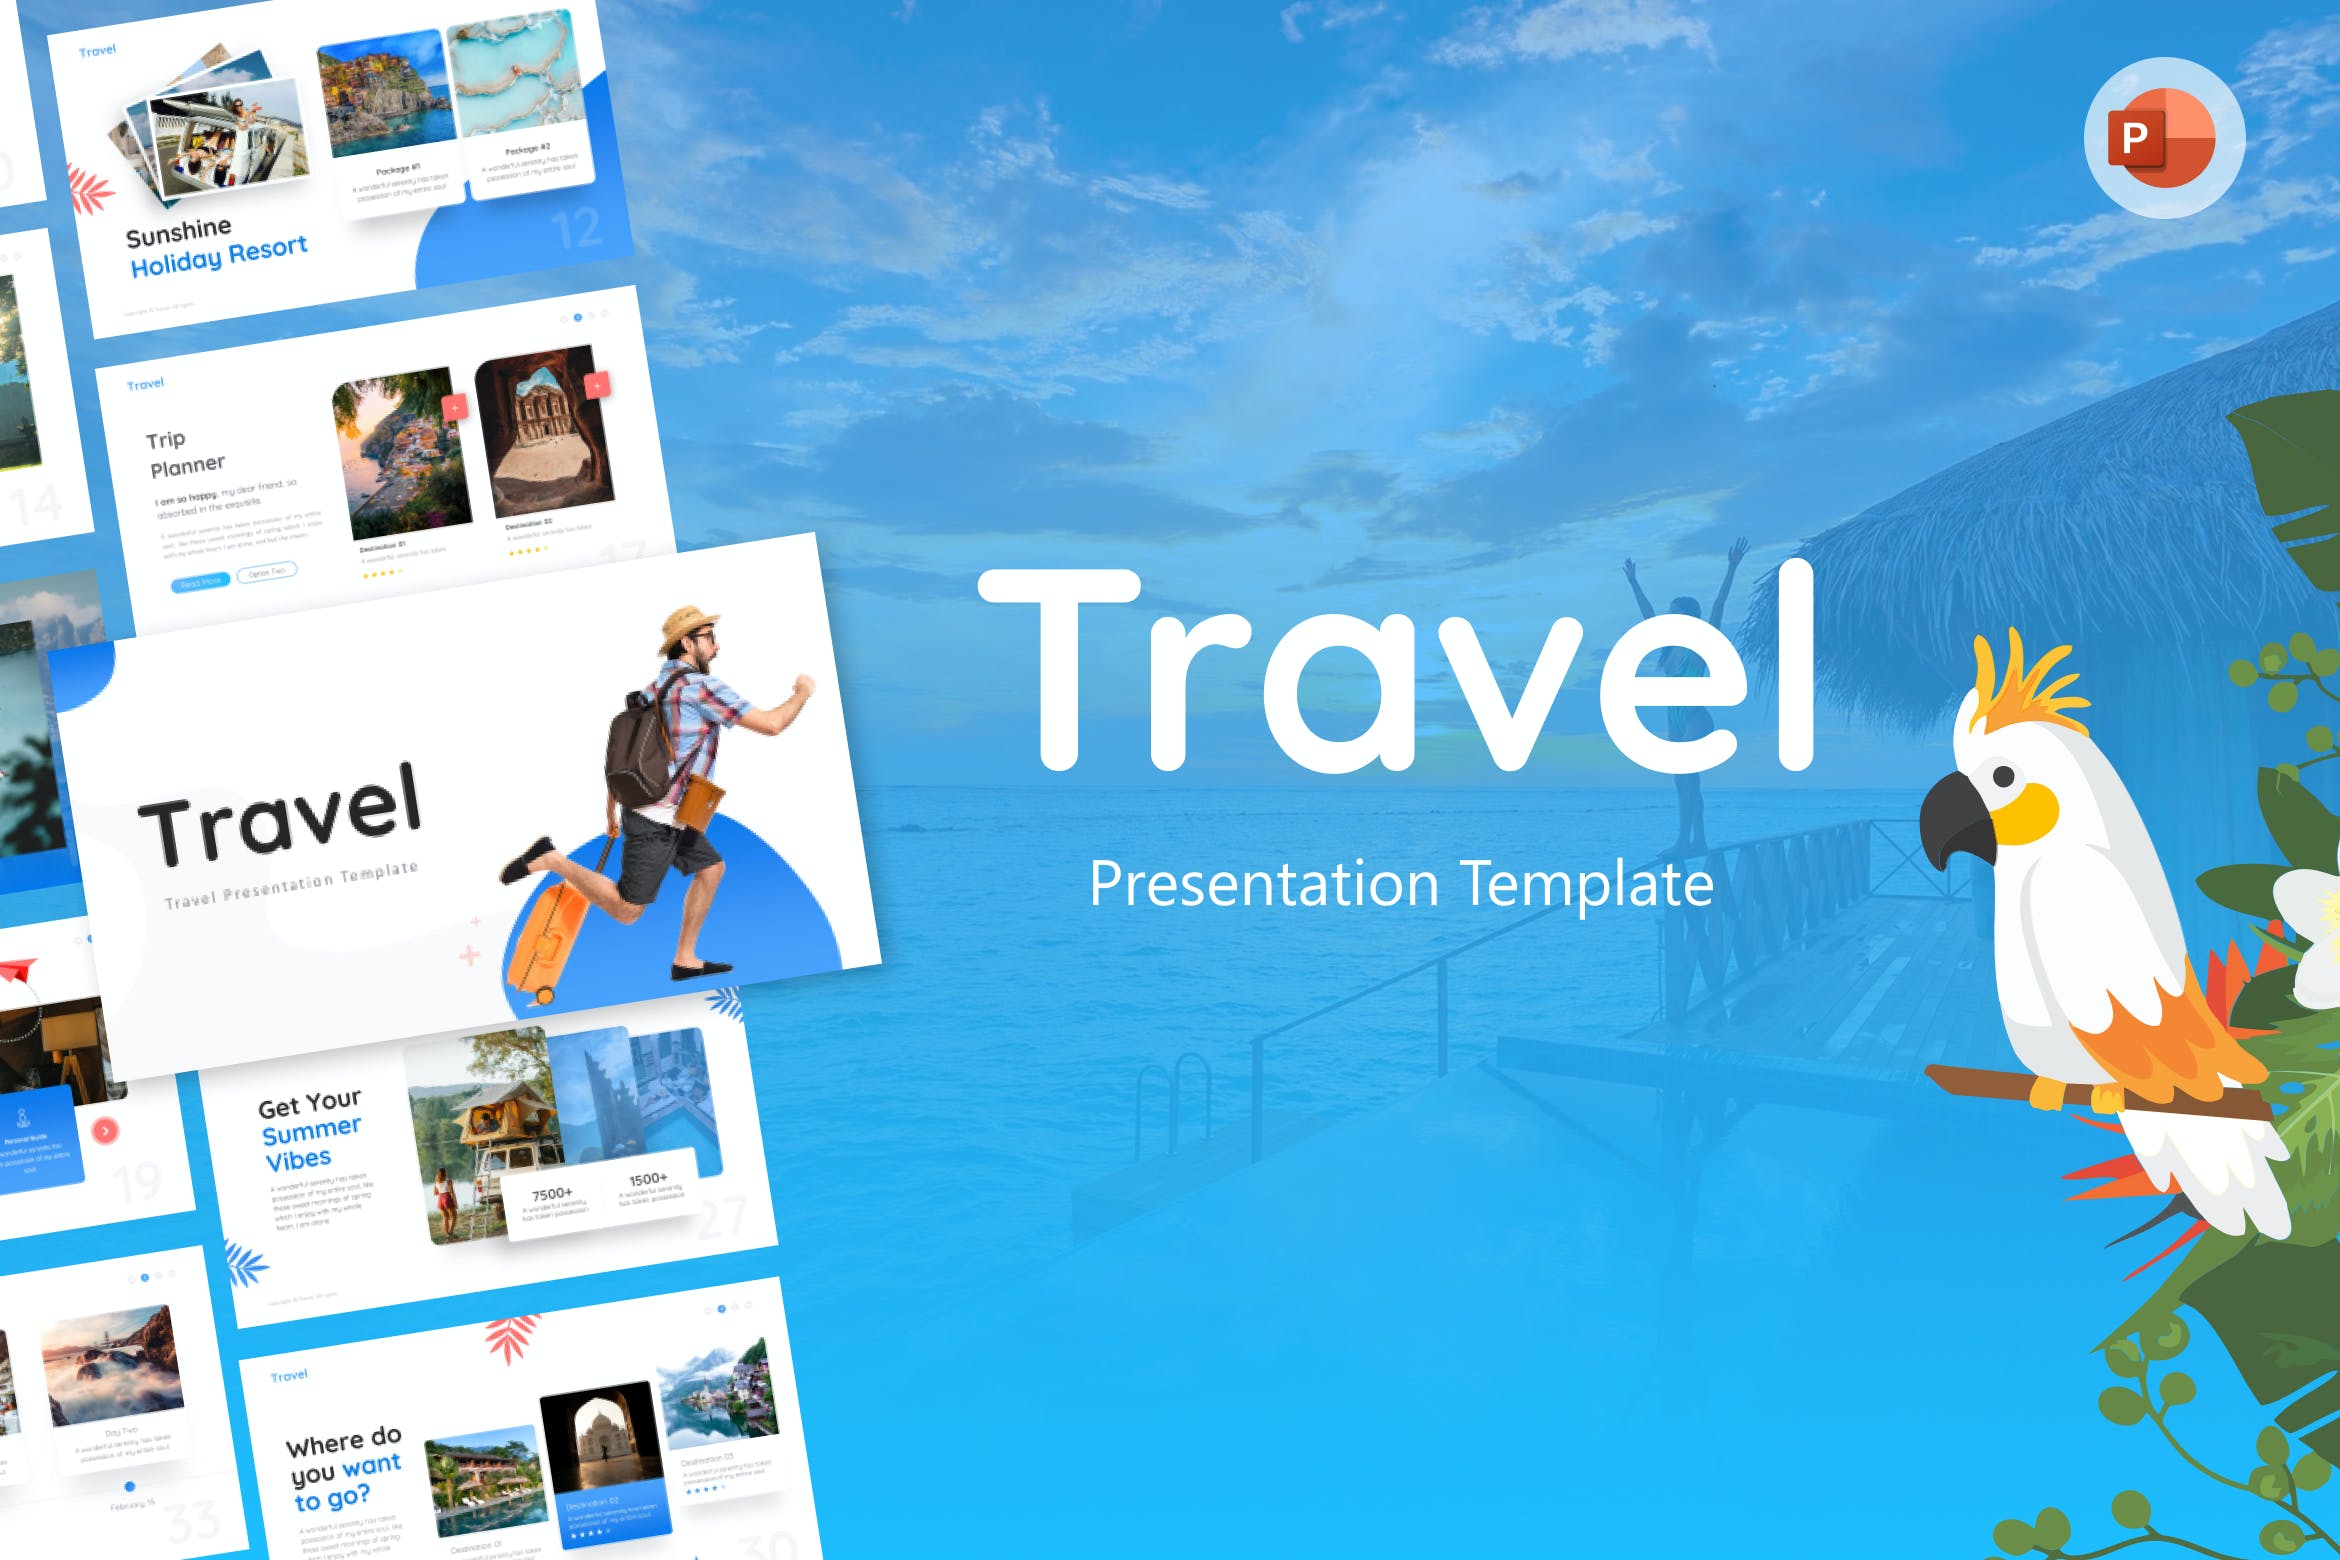 旅游创意PPT演示文稿 Travel Creative PowerPoint Template 幻灯图表 第1张